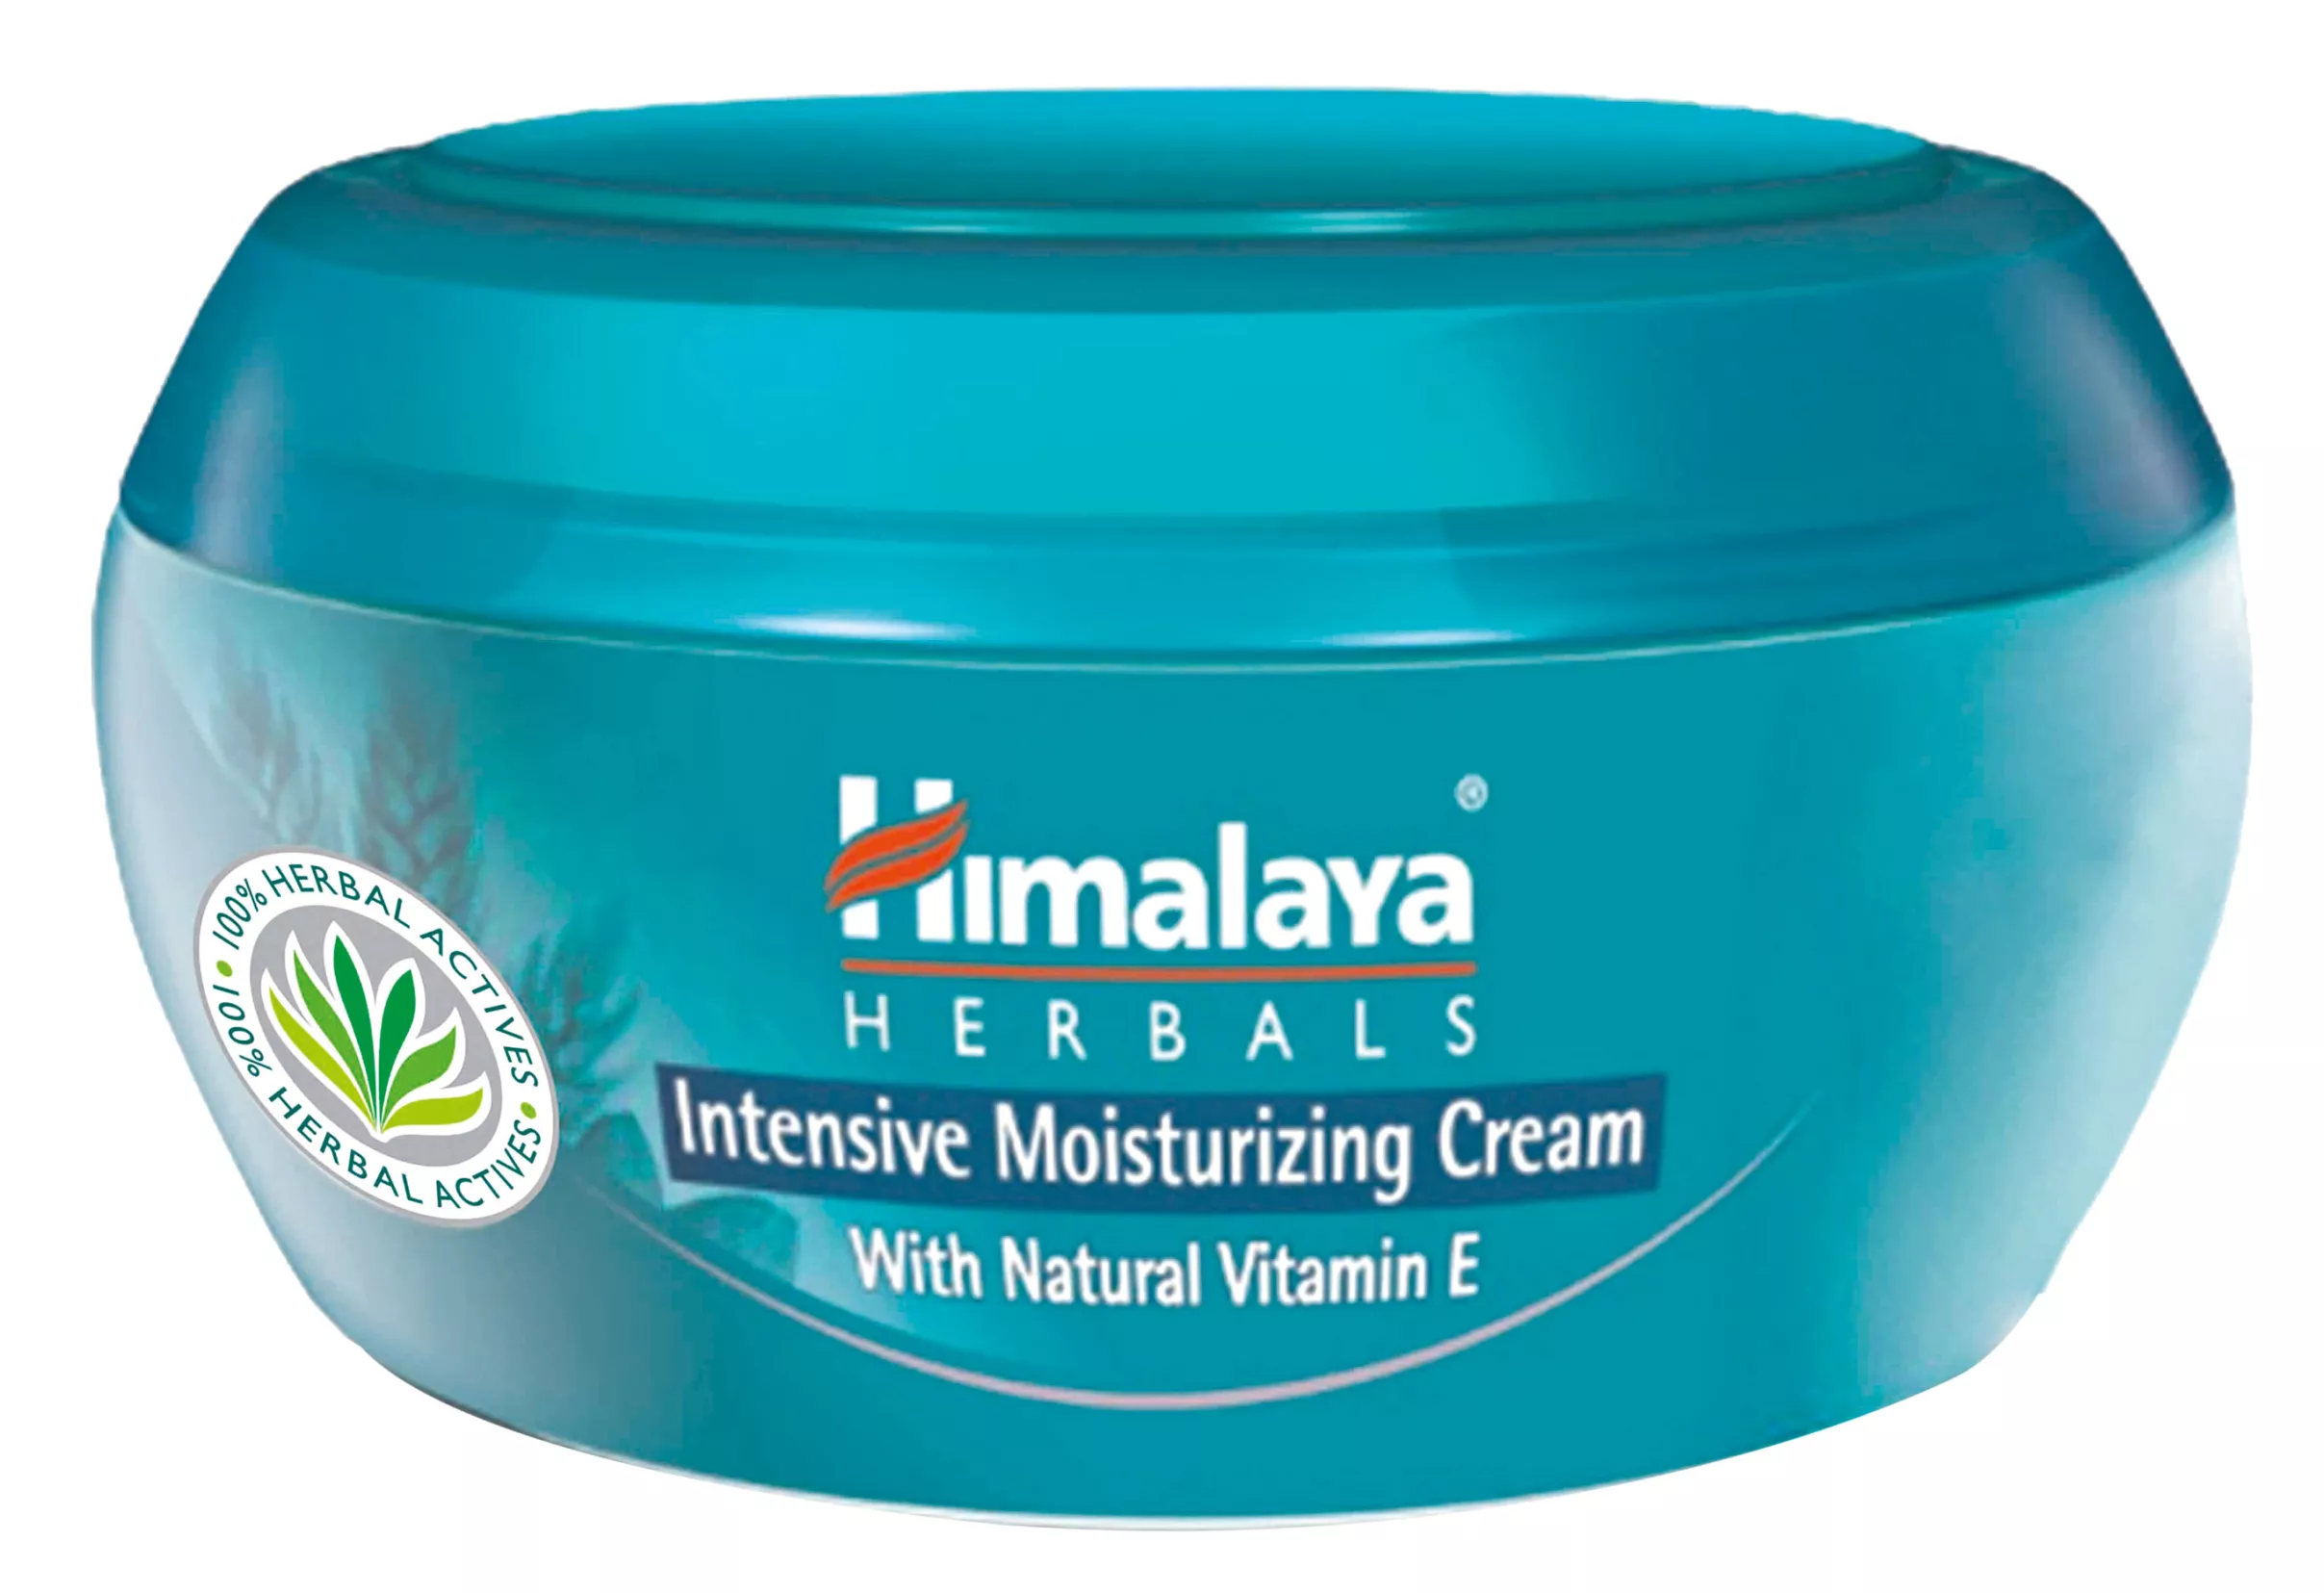 Himalaya Herbals Intensive Moisturizing Cream sopii koko kropalle, myös kasvoille, 150 ml 5 e.